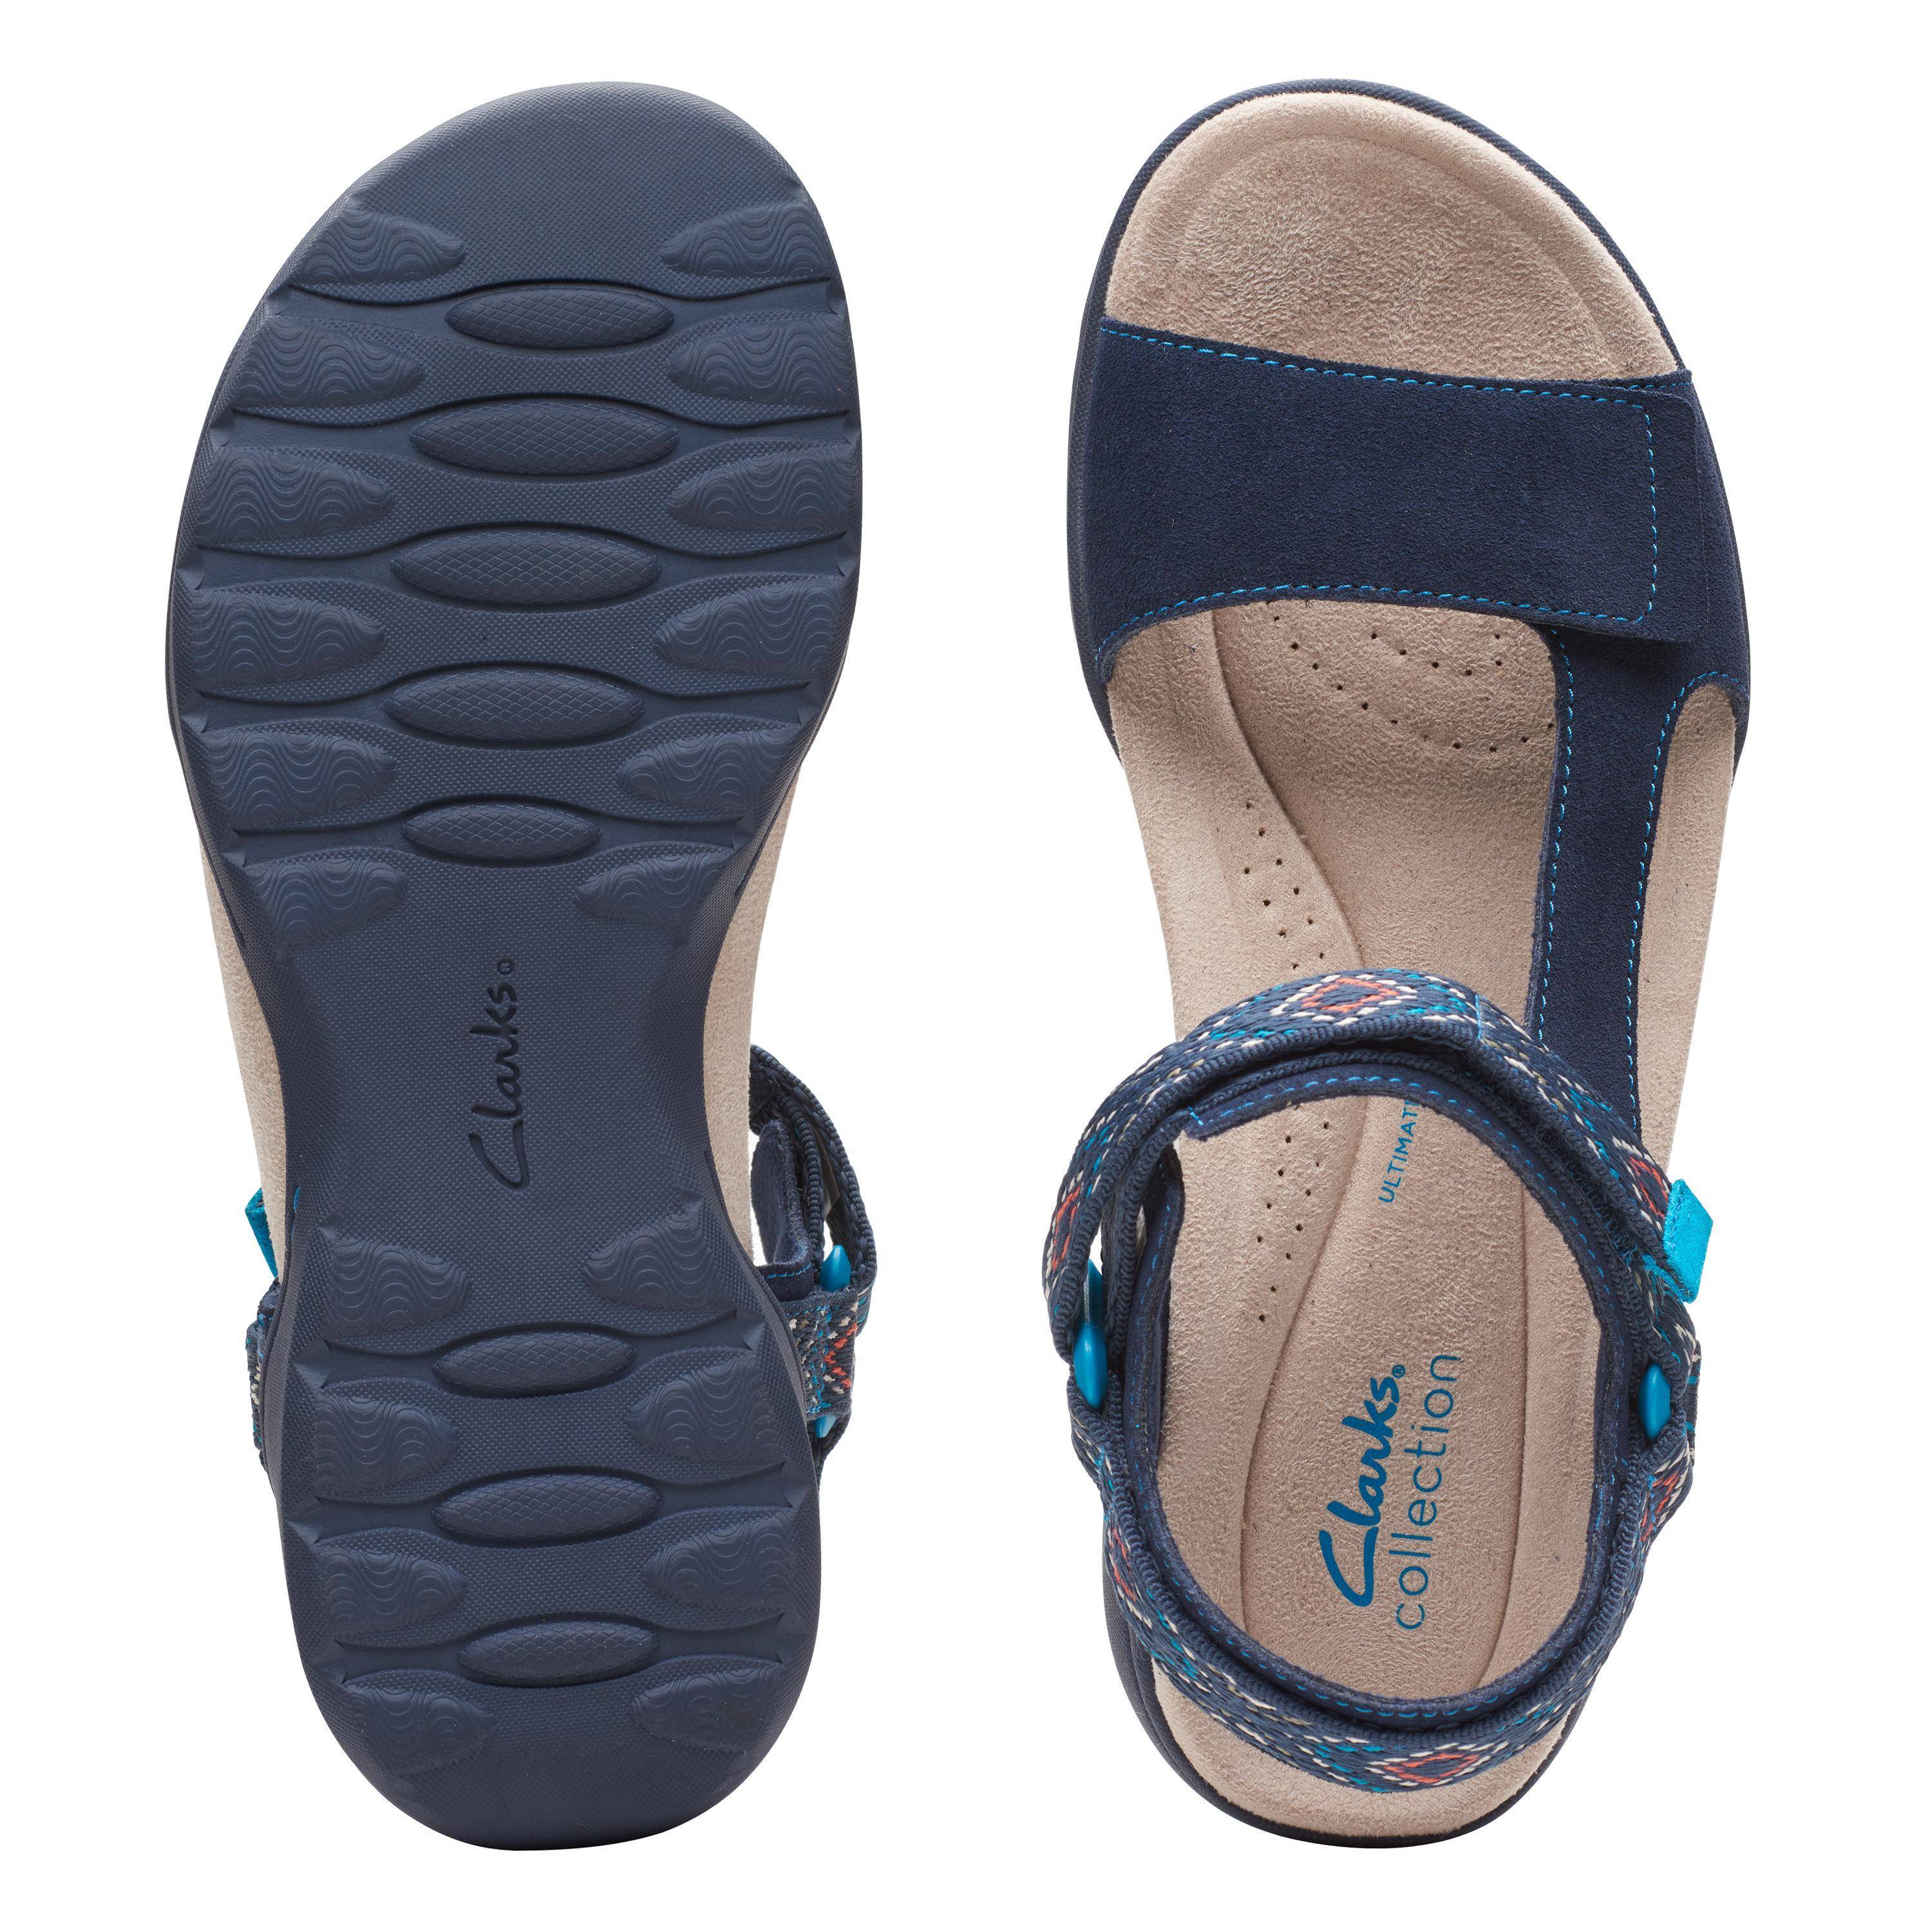 Женские сандалии Clarks (Amanda Step 26165095), синие, цвет синий, размер 37.5 - фото 7